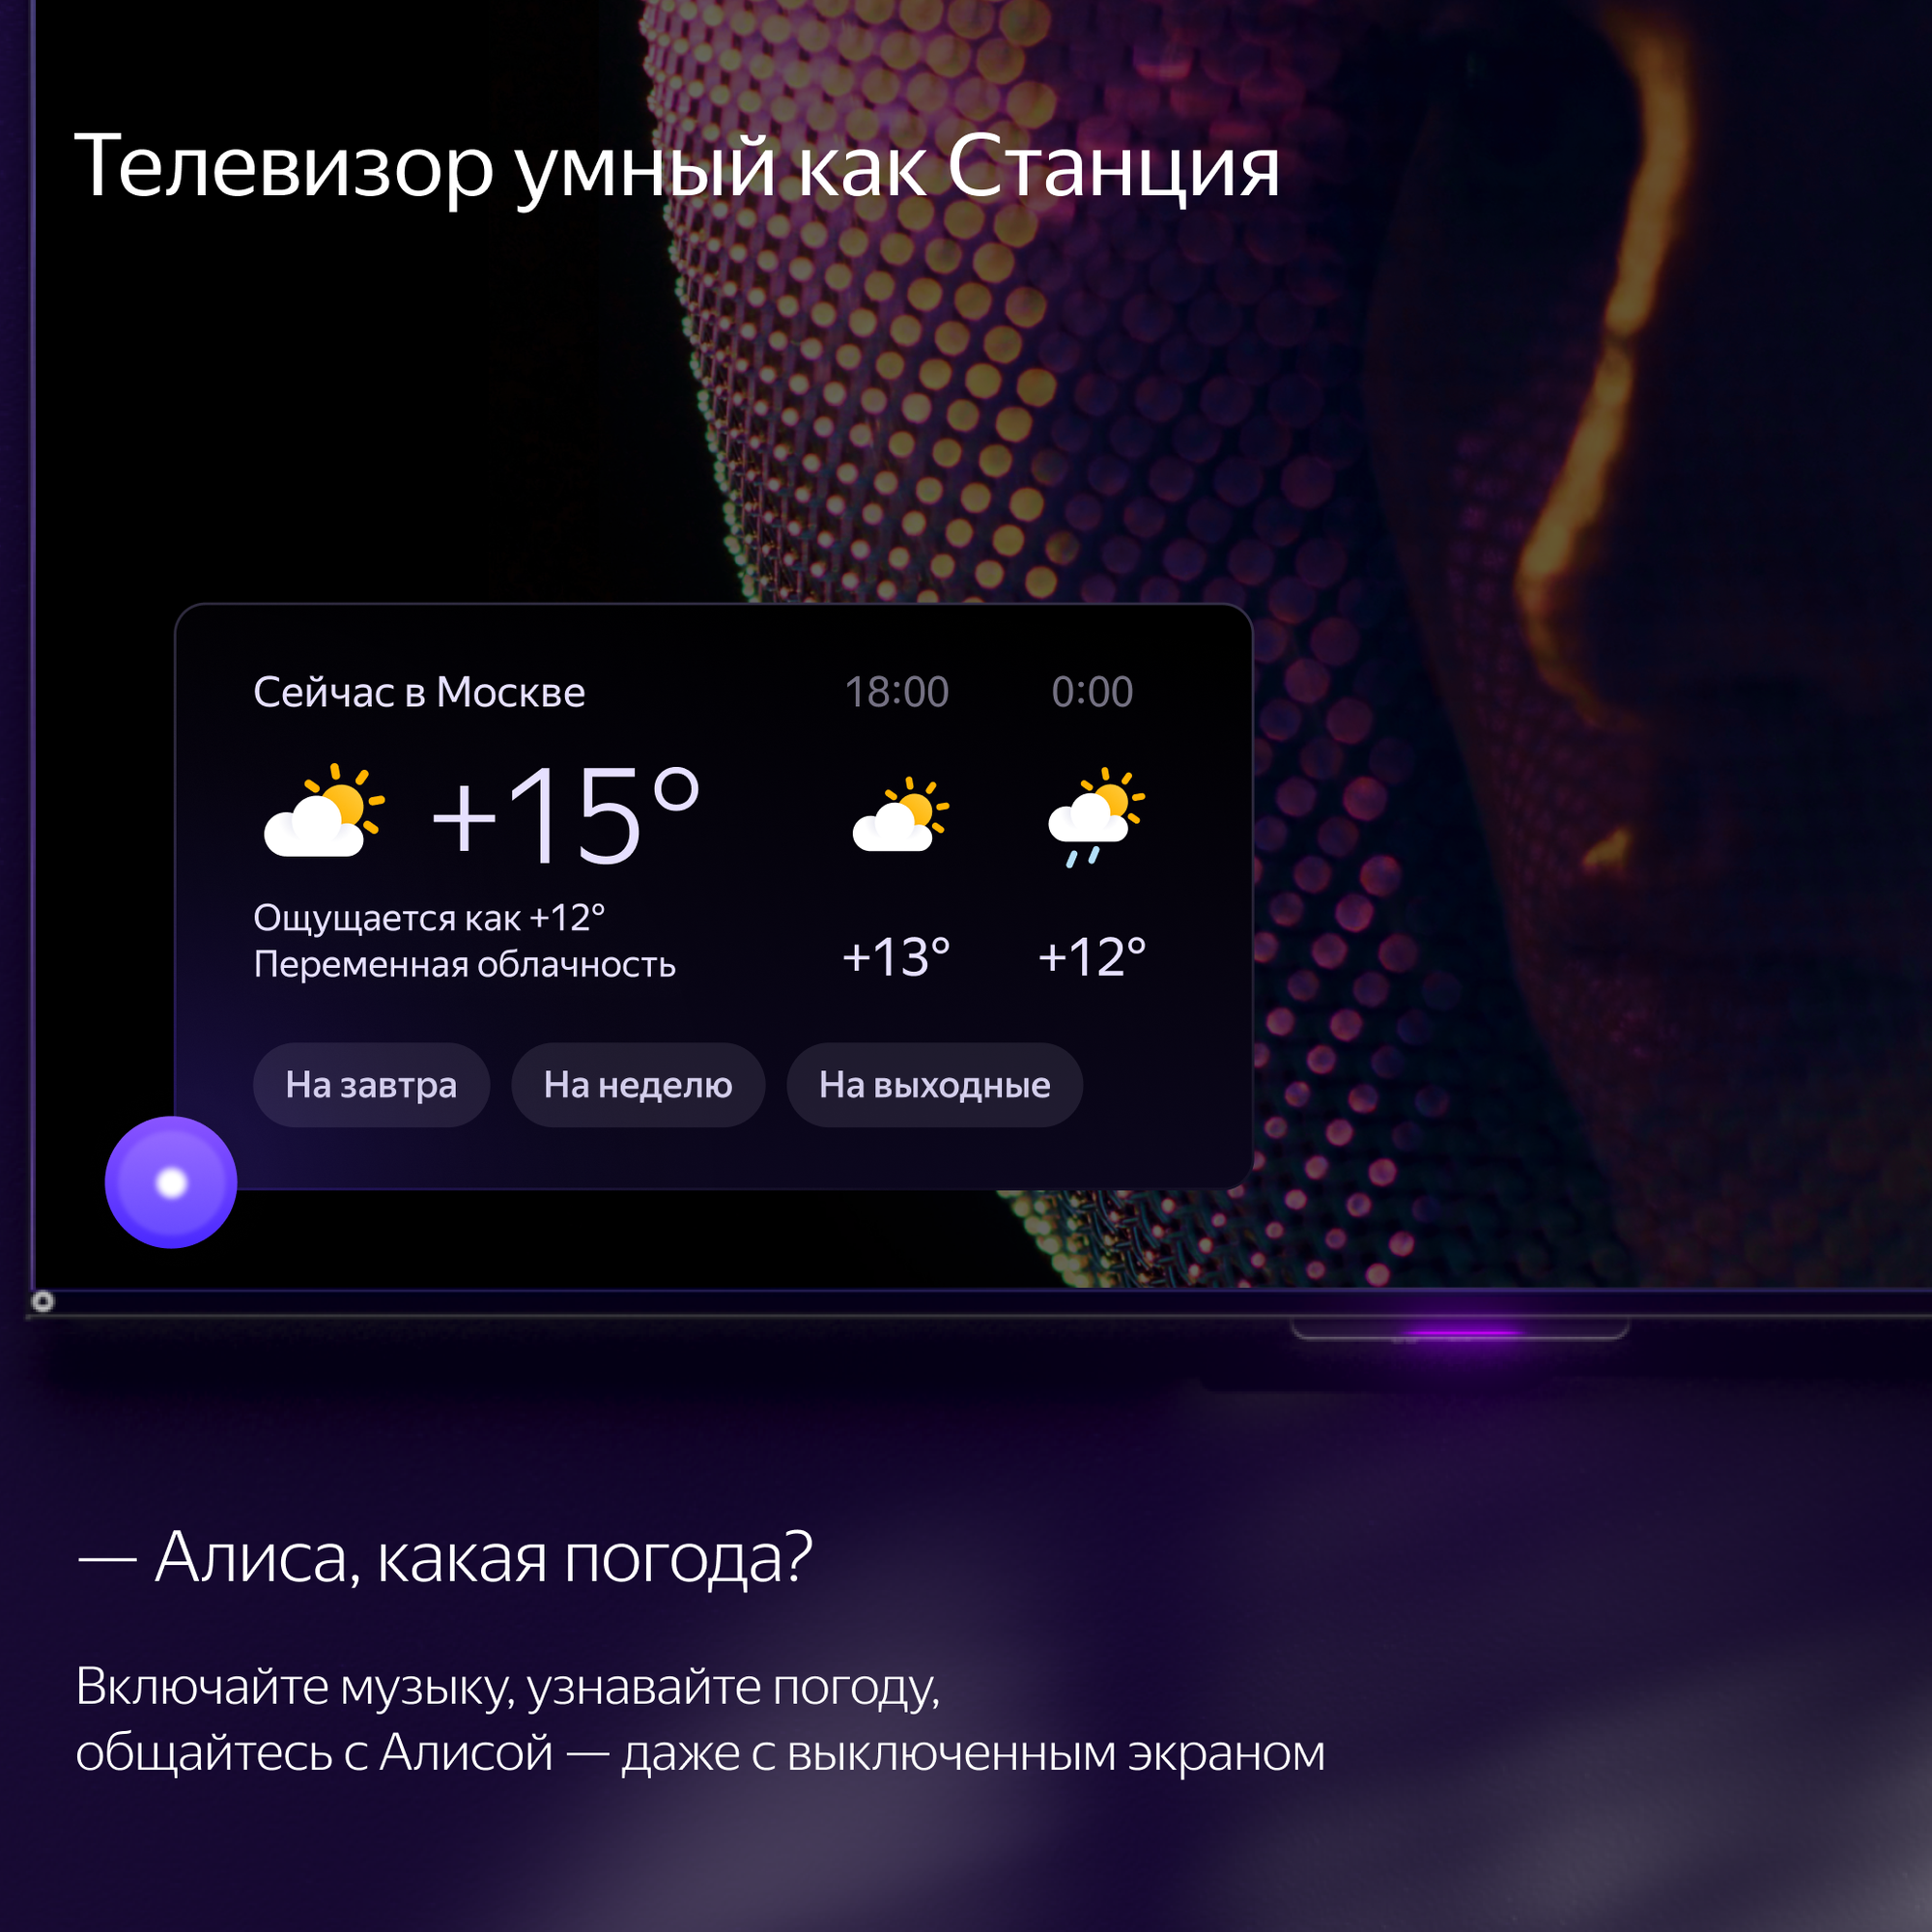 Телевизор Яндекс 50 Тв станция с Алисой 4К YNDX-00092 - фото №10